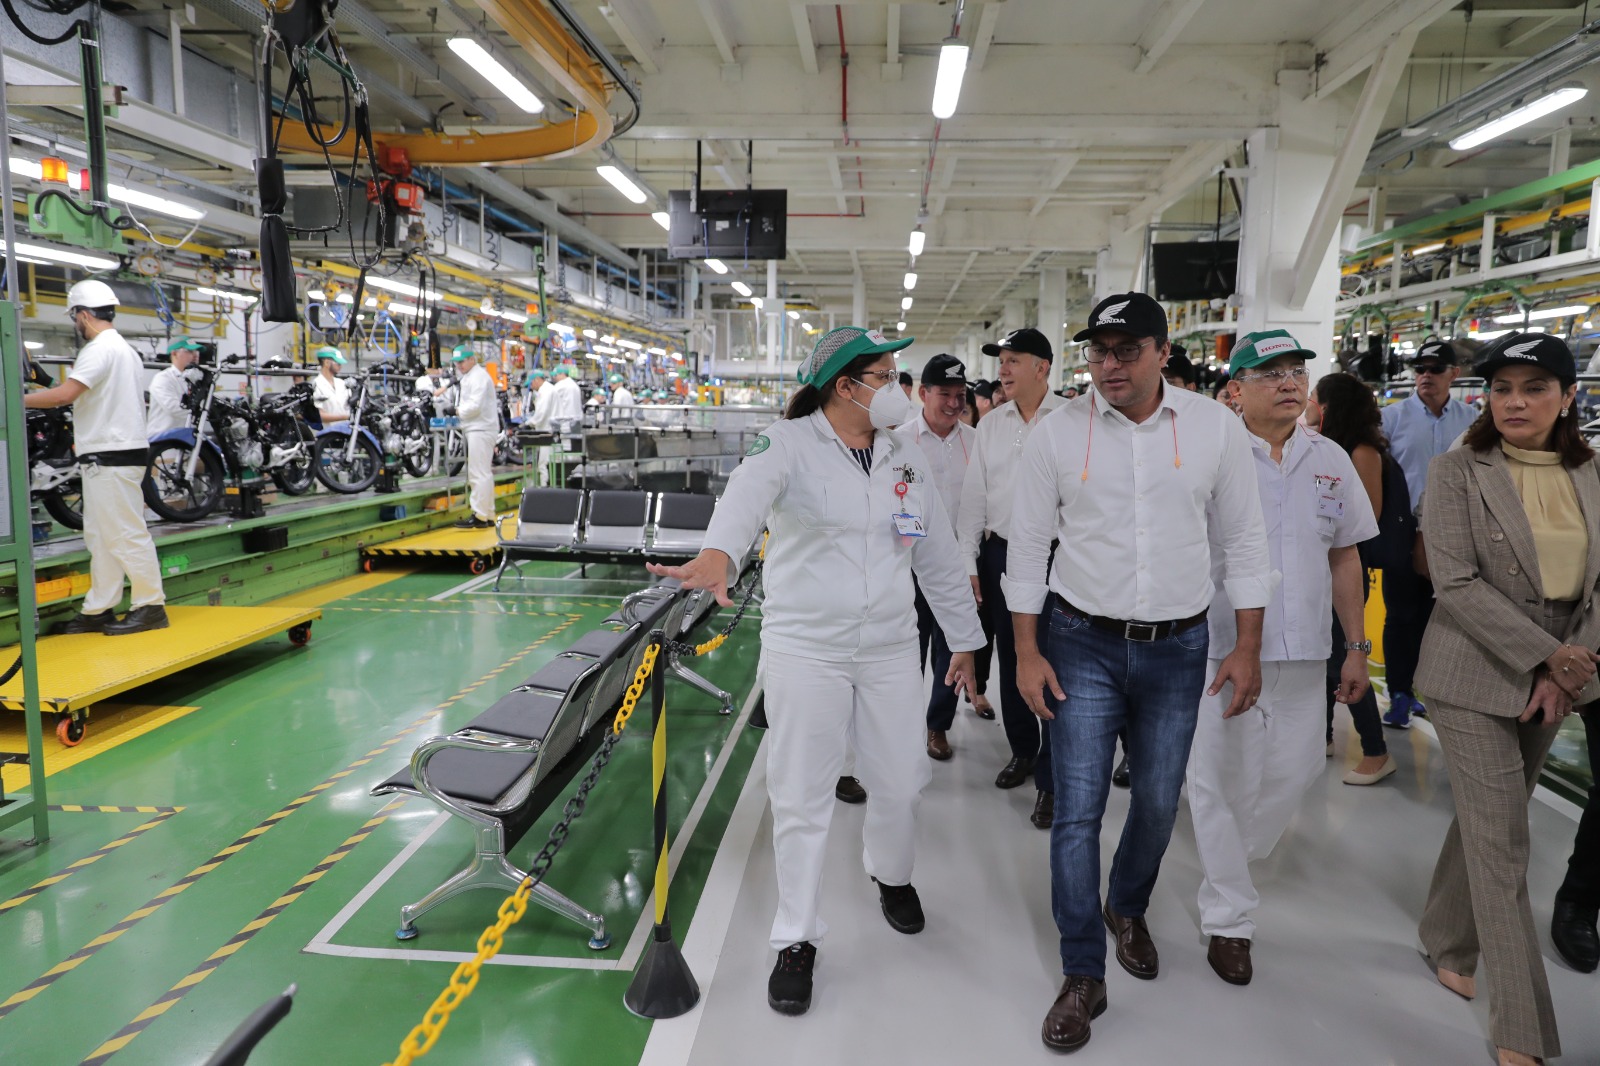 O governador e deputados federais, que incluem três do Amazonas, além do coordenador e relator, estiveram na fábrica da Moto Honda da Amazônia